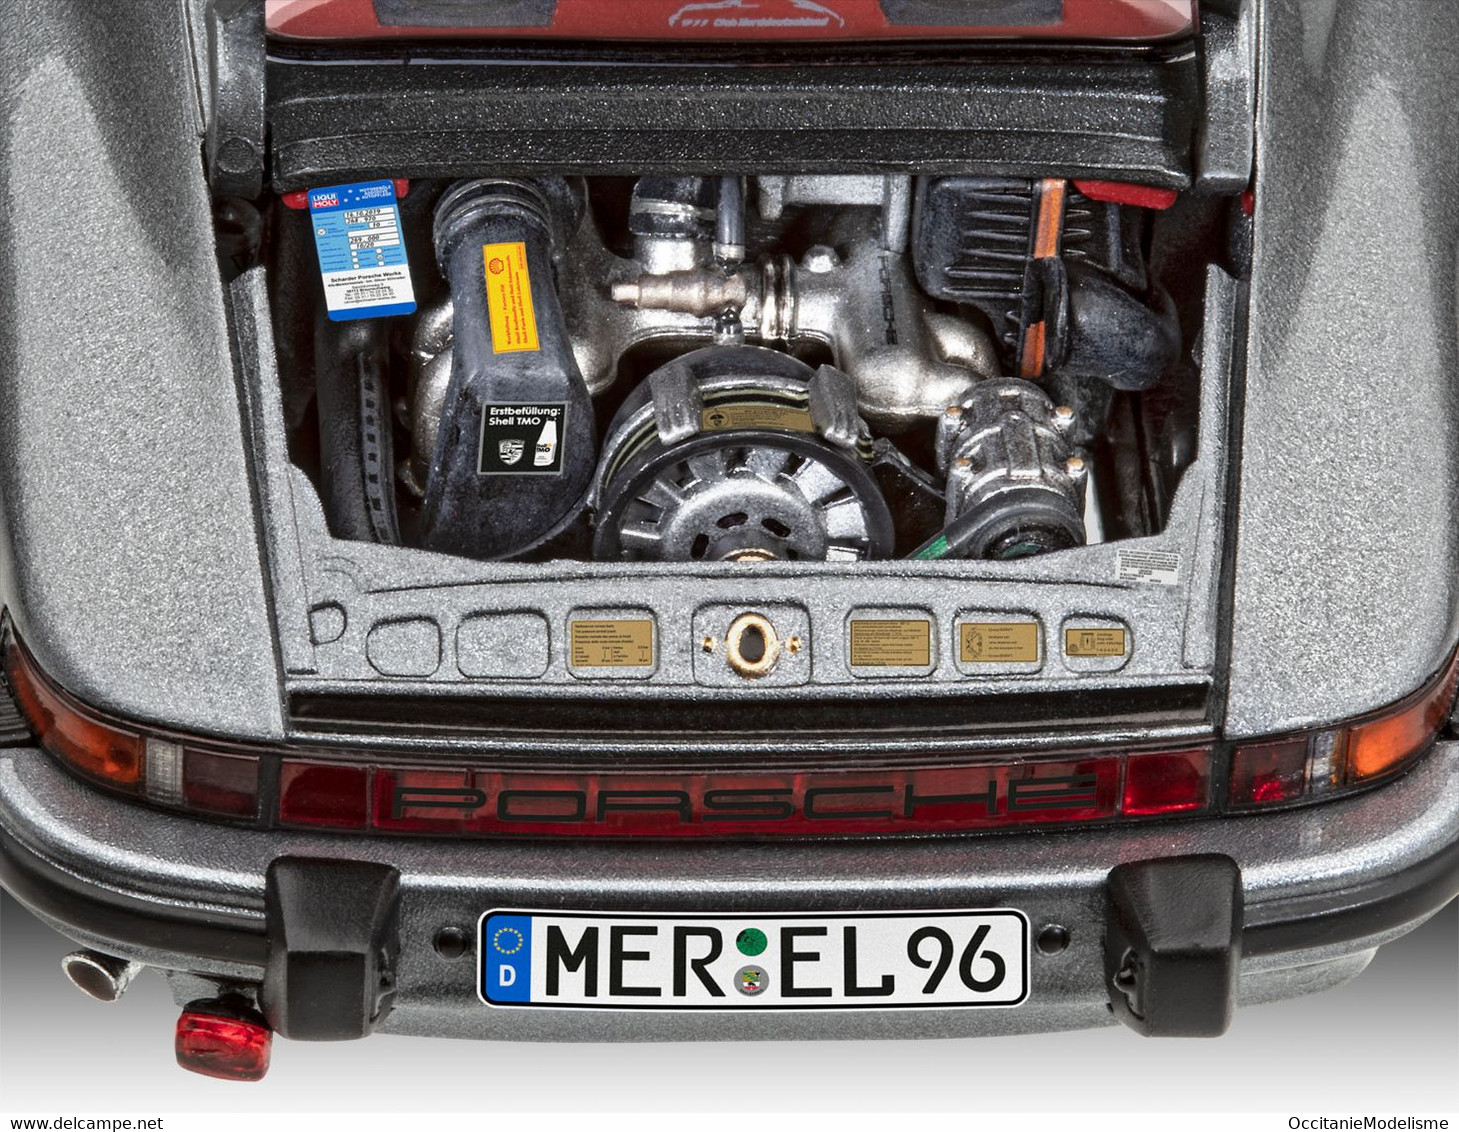 Revell - PORSCHE 911 CARRERA 3.2 Coupé G-Model Maquette Kit Plastique Réf. 07688 Neuf NBO 1/24 - Carros